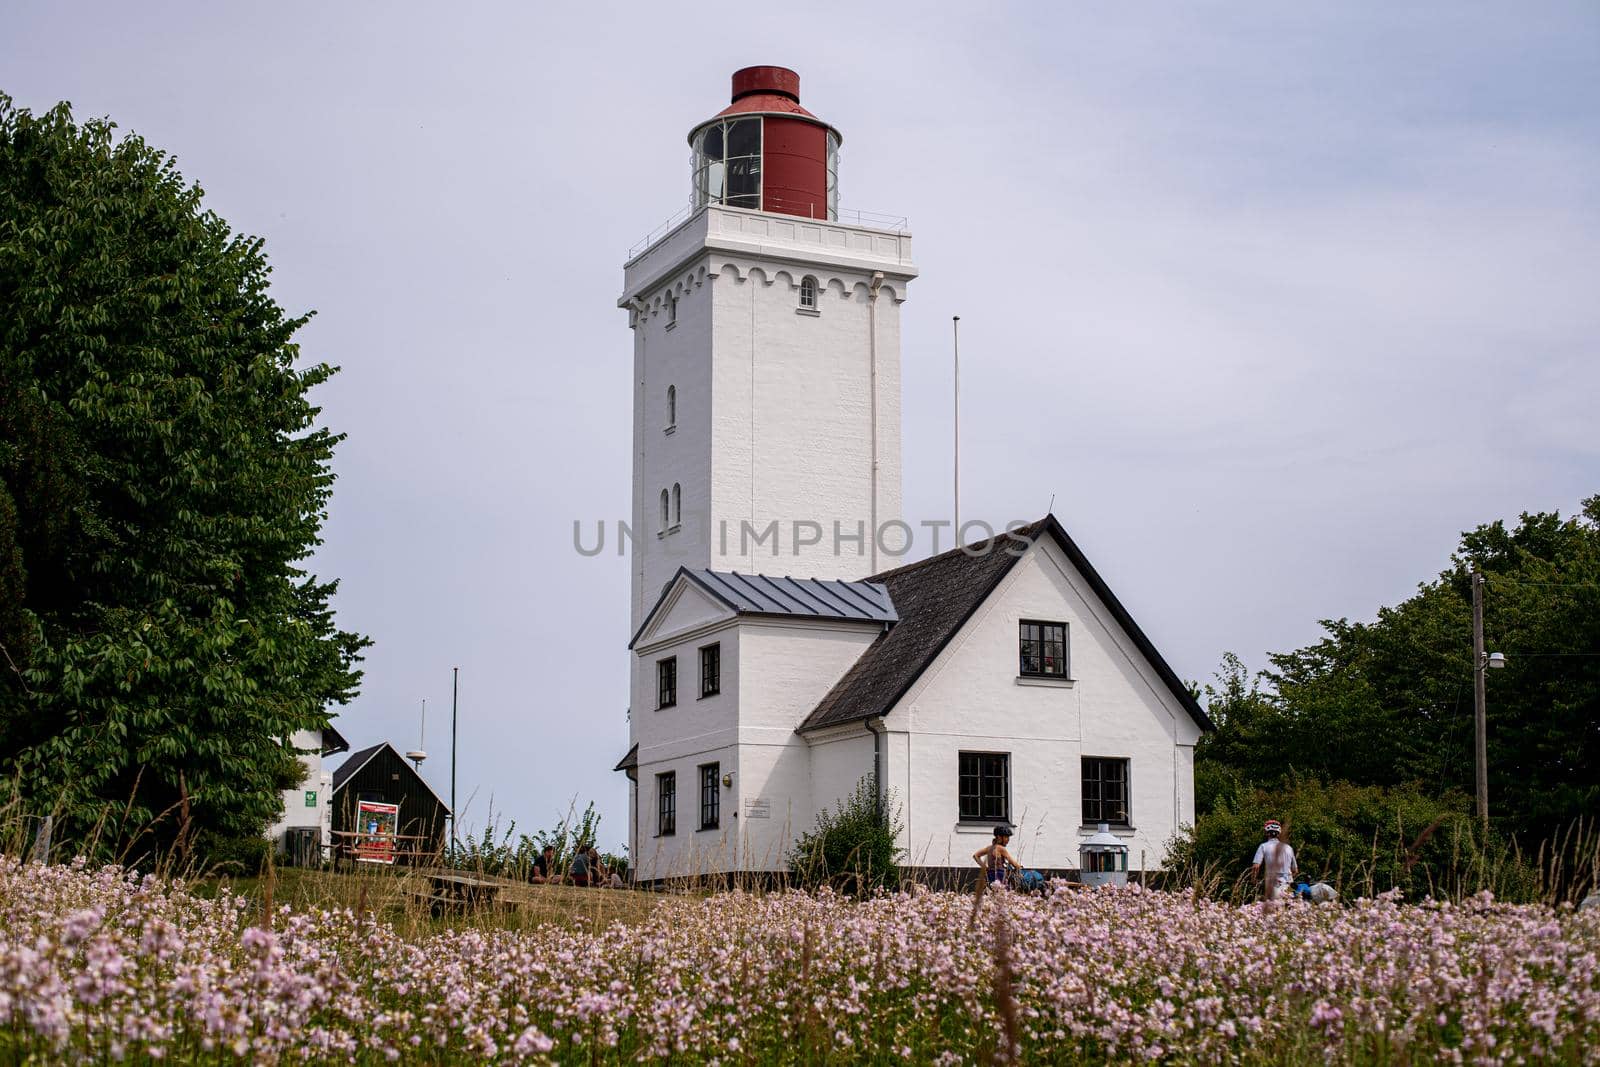 Nakkehoved Lighthouse in North Zealand by oliverfoerstner